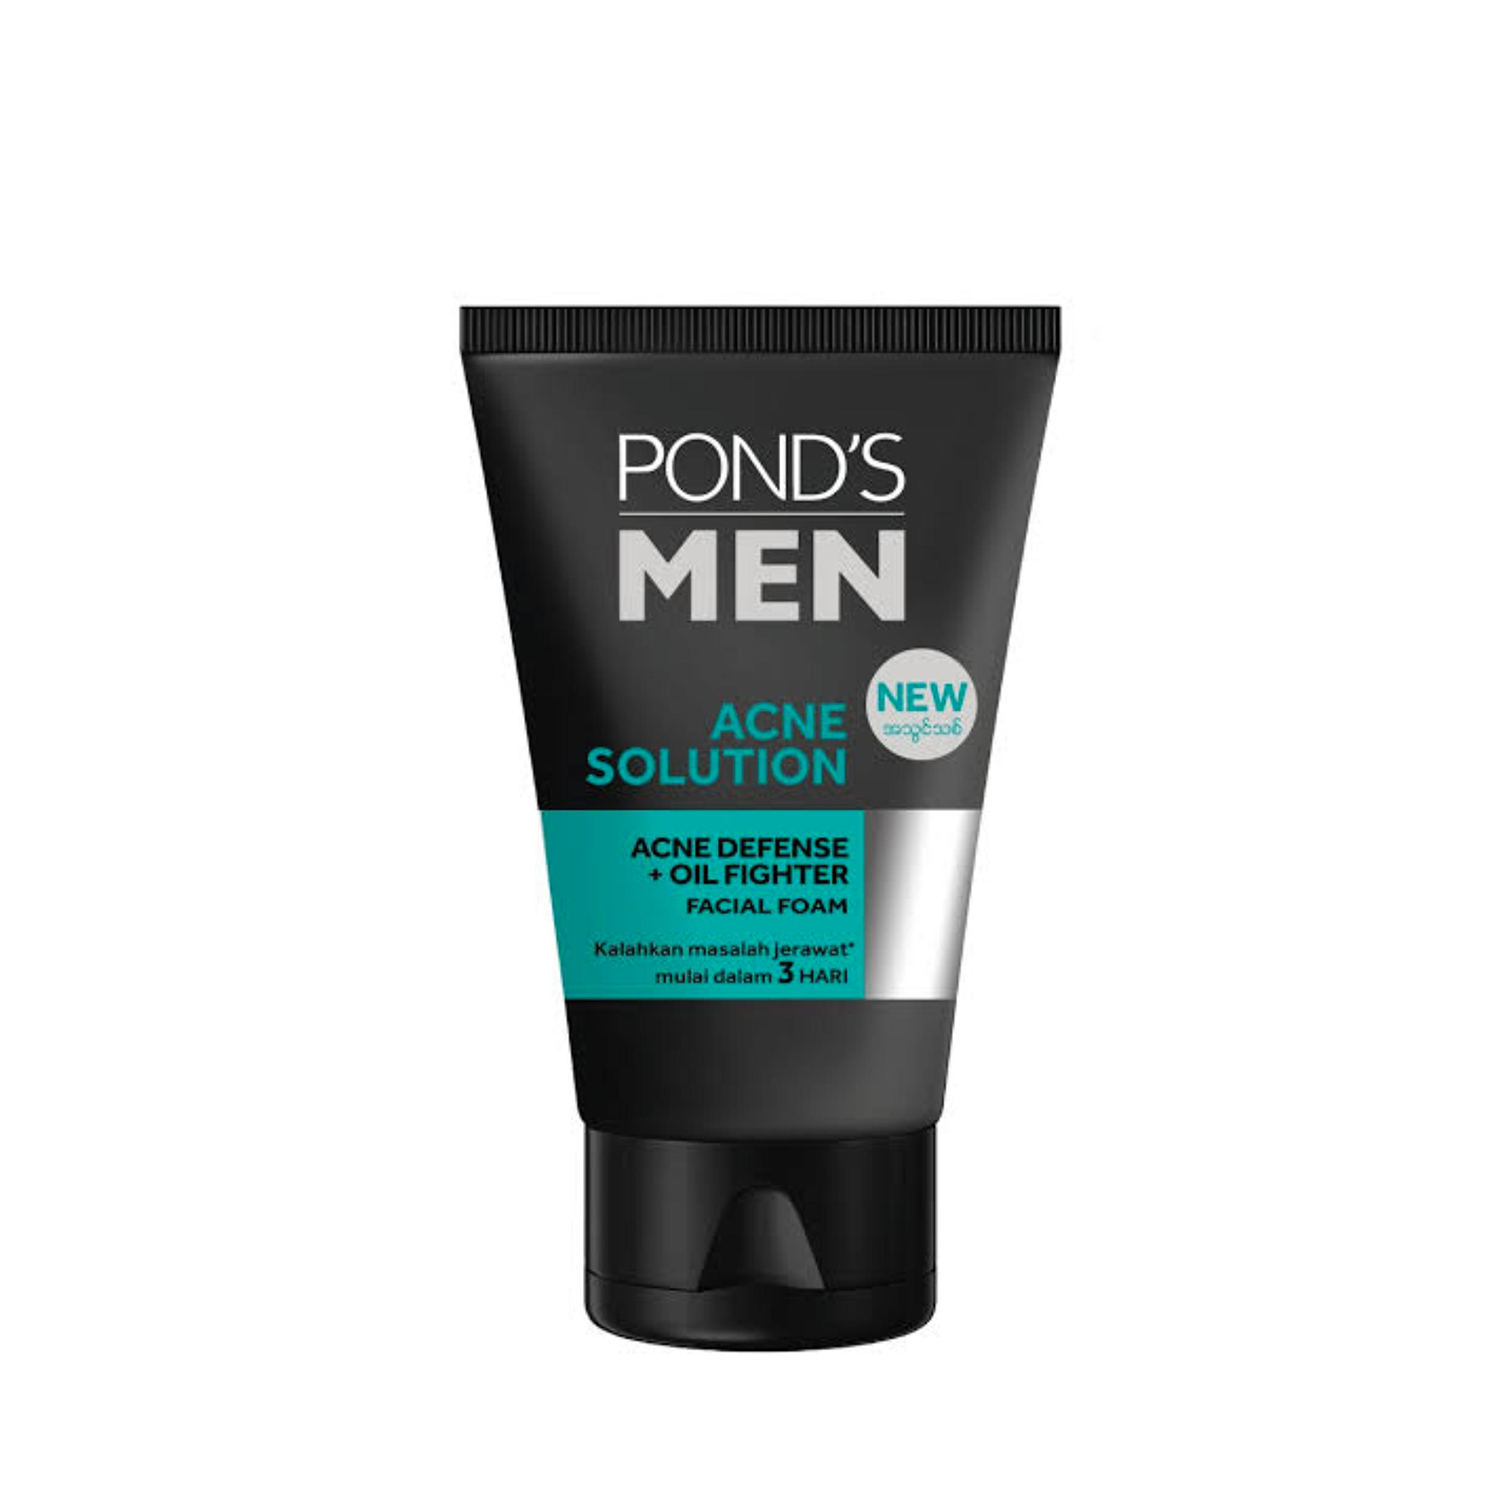 Pond's Men Acne Solution Facial Foam100g